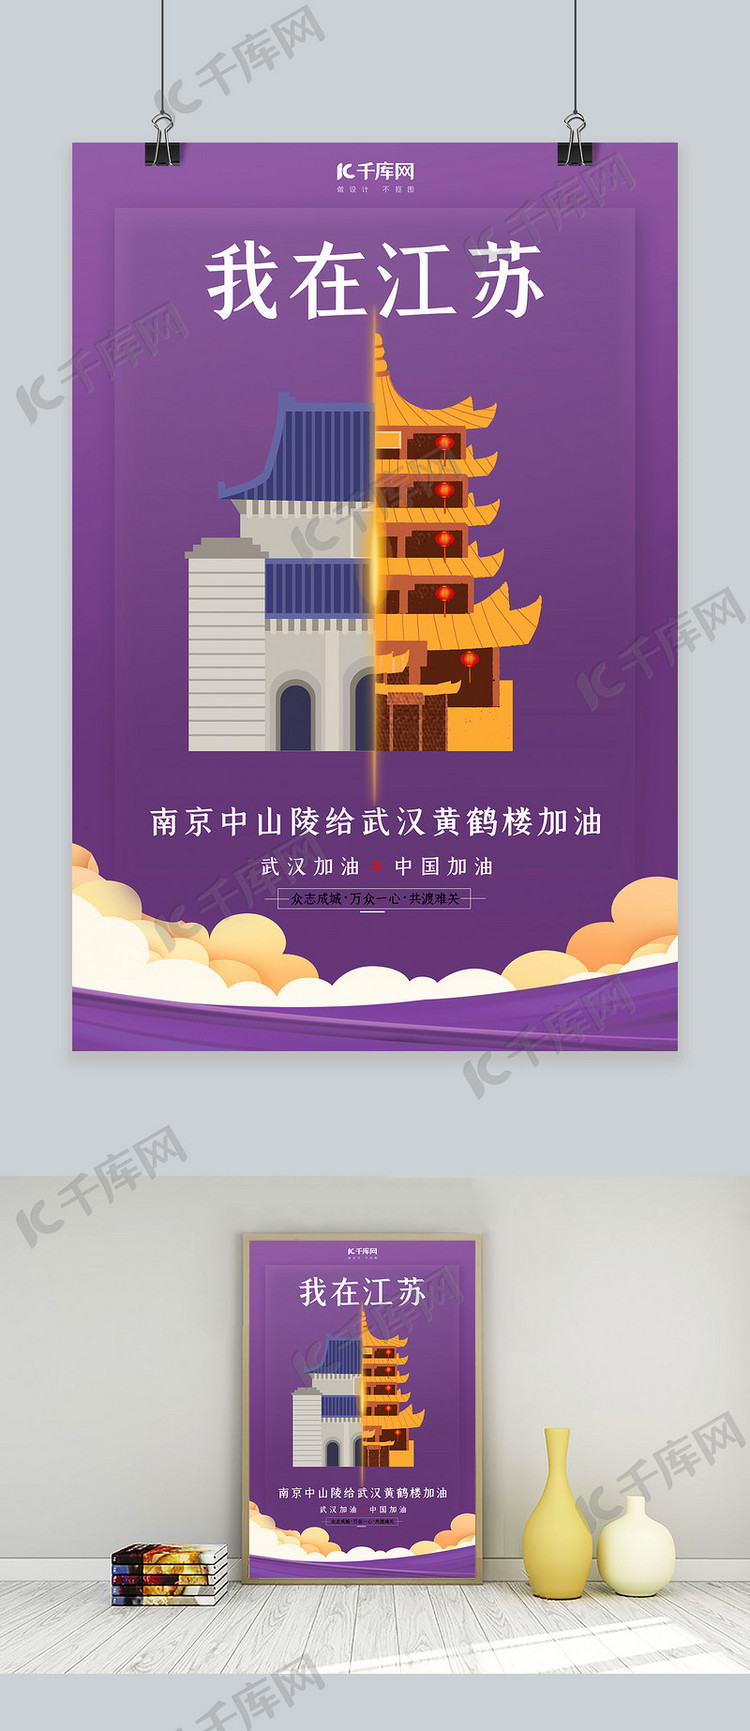 武汉加油南京中山陵紫色扁平海报